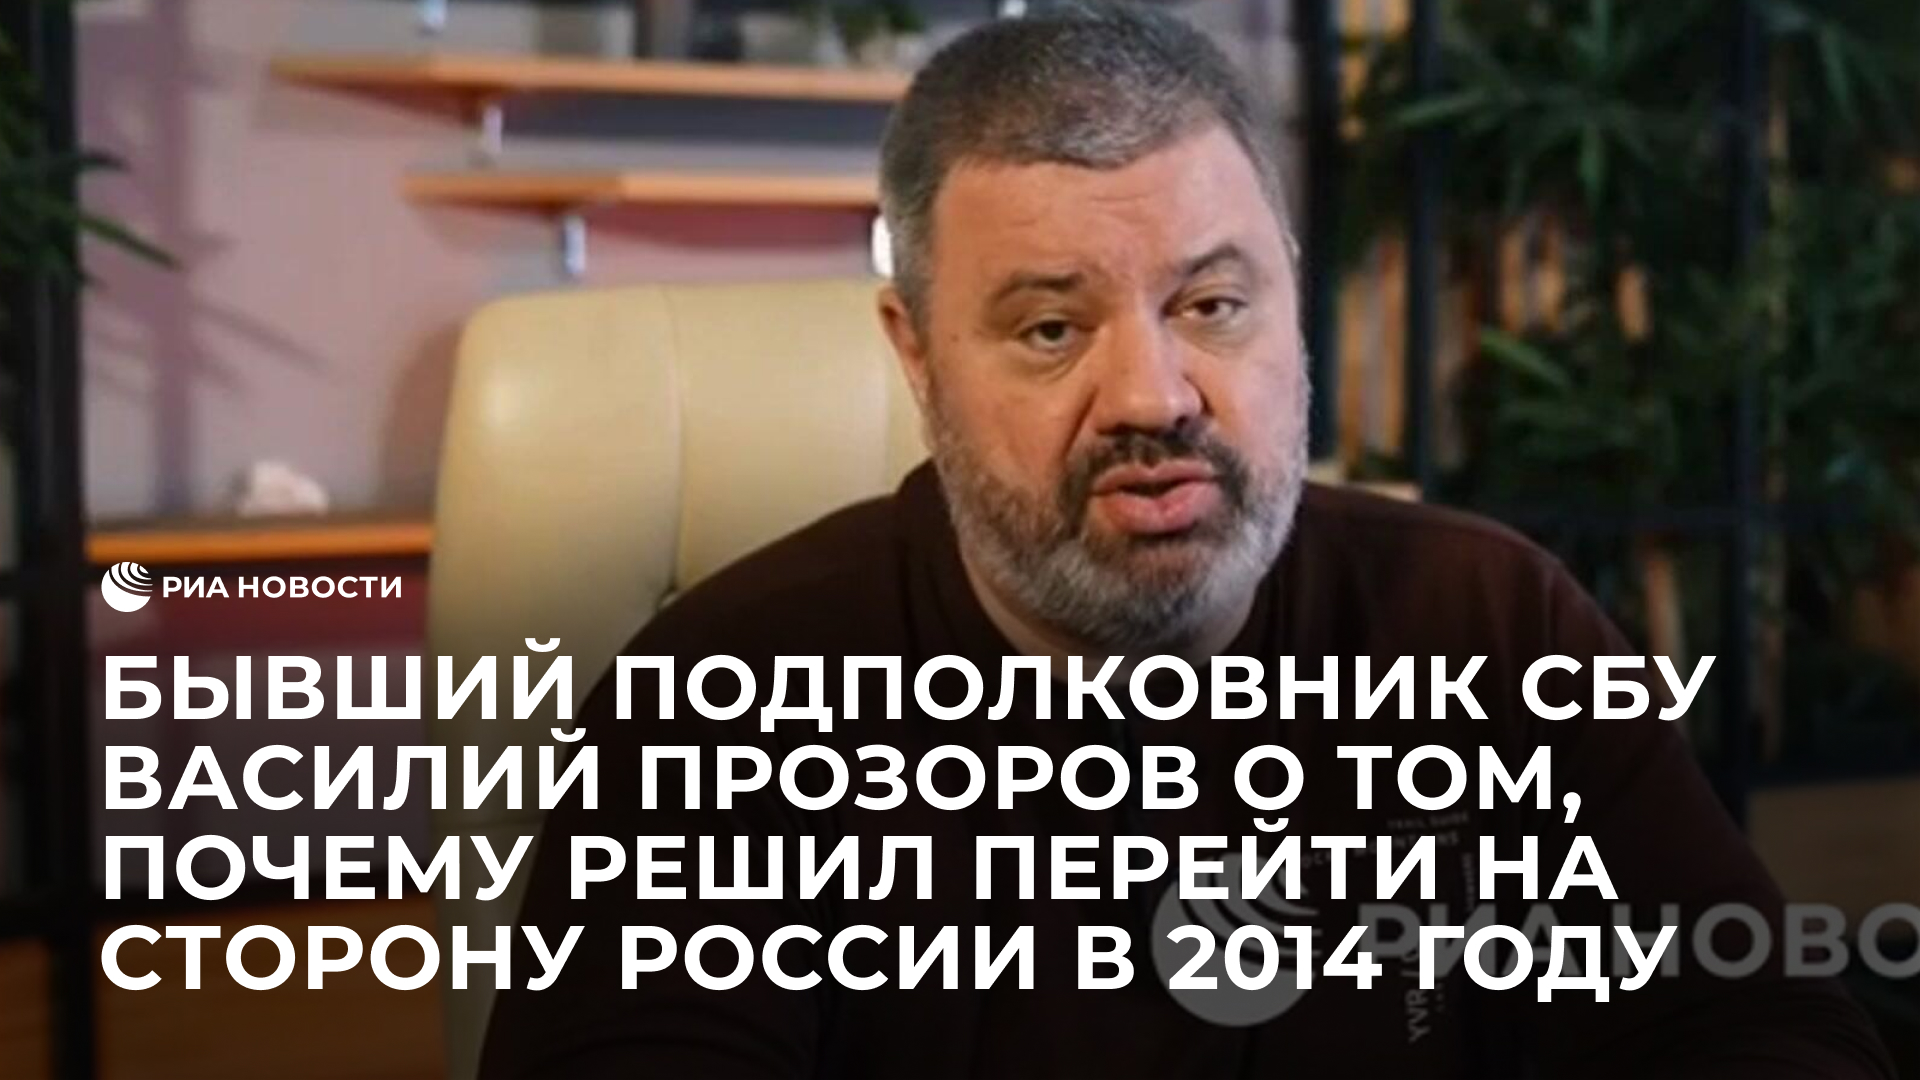 Бывший подполковник СБУ Василий Прозоров о том, почему решил перейти на сторону России в 2014 году